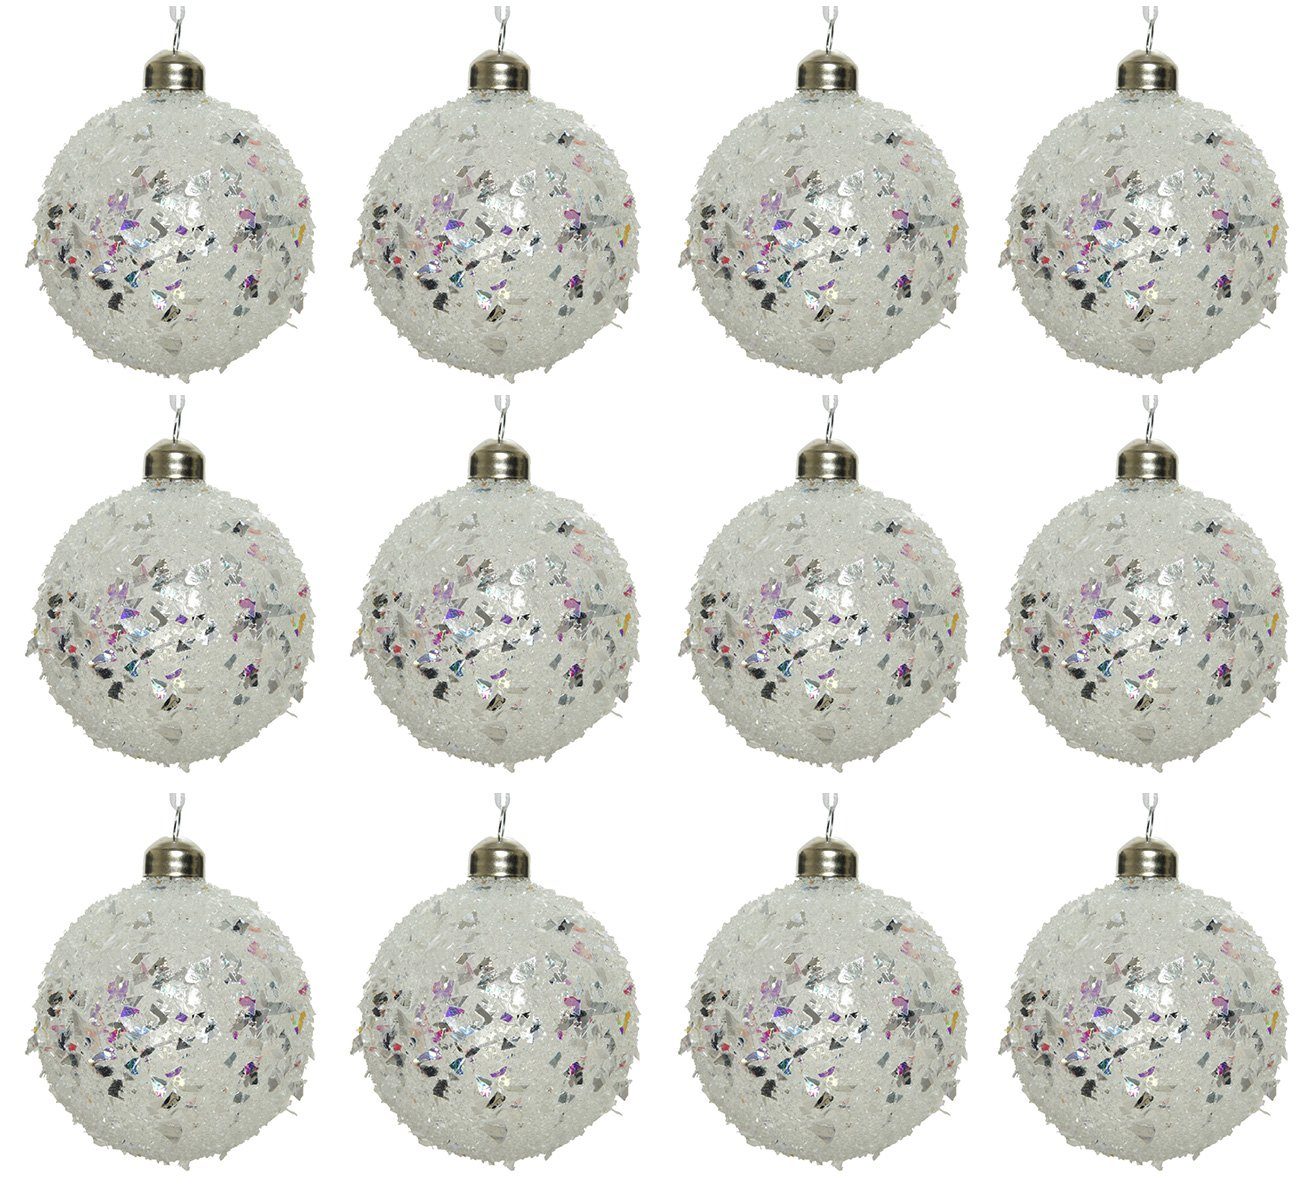 Decoris season decorations Weihnachtsbaumkugel, Weihnachtskugeln Glas 8cm im Glitzer Look 12er Set Klar irisierend | Weihnachtskugeln